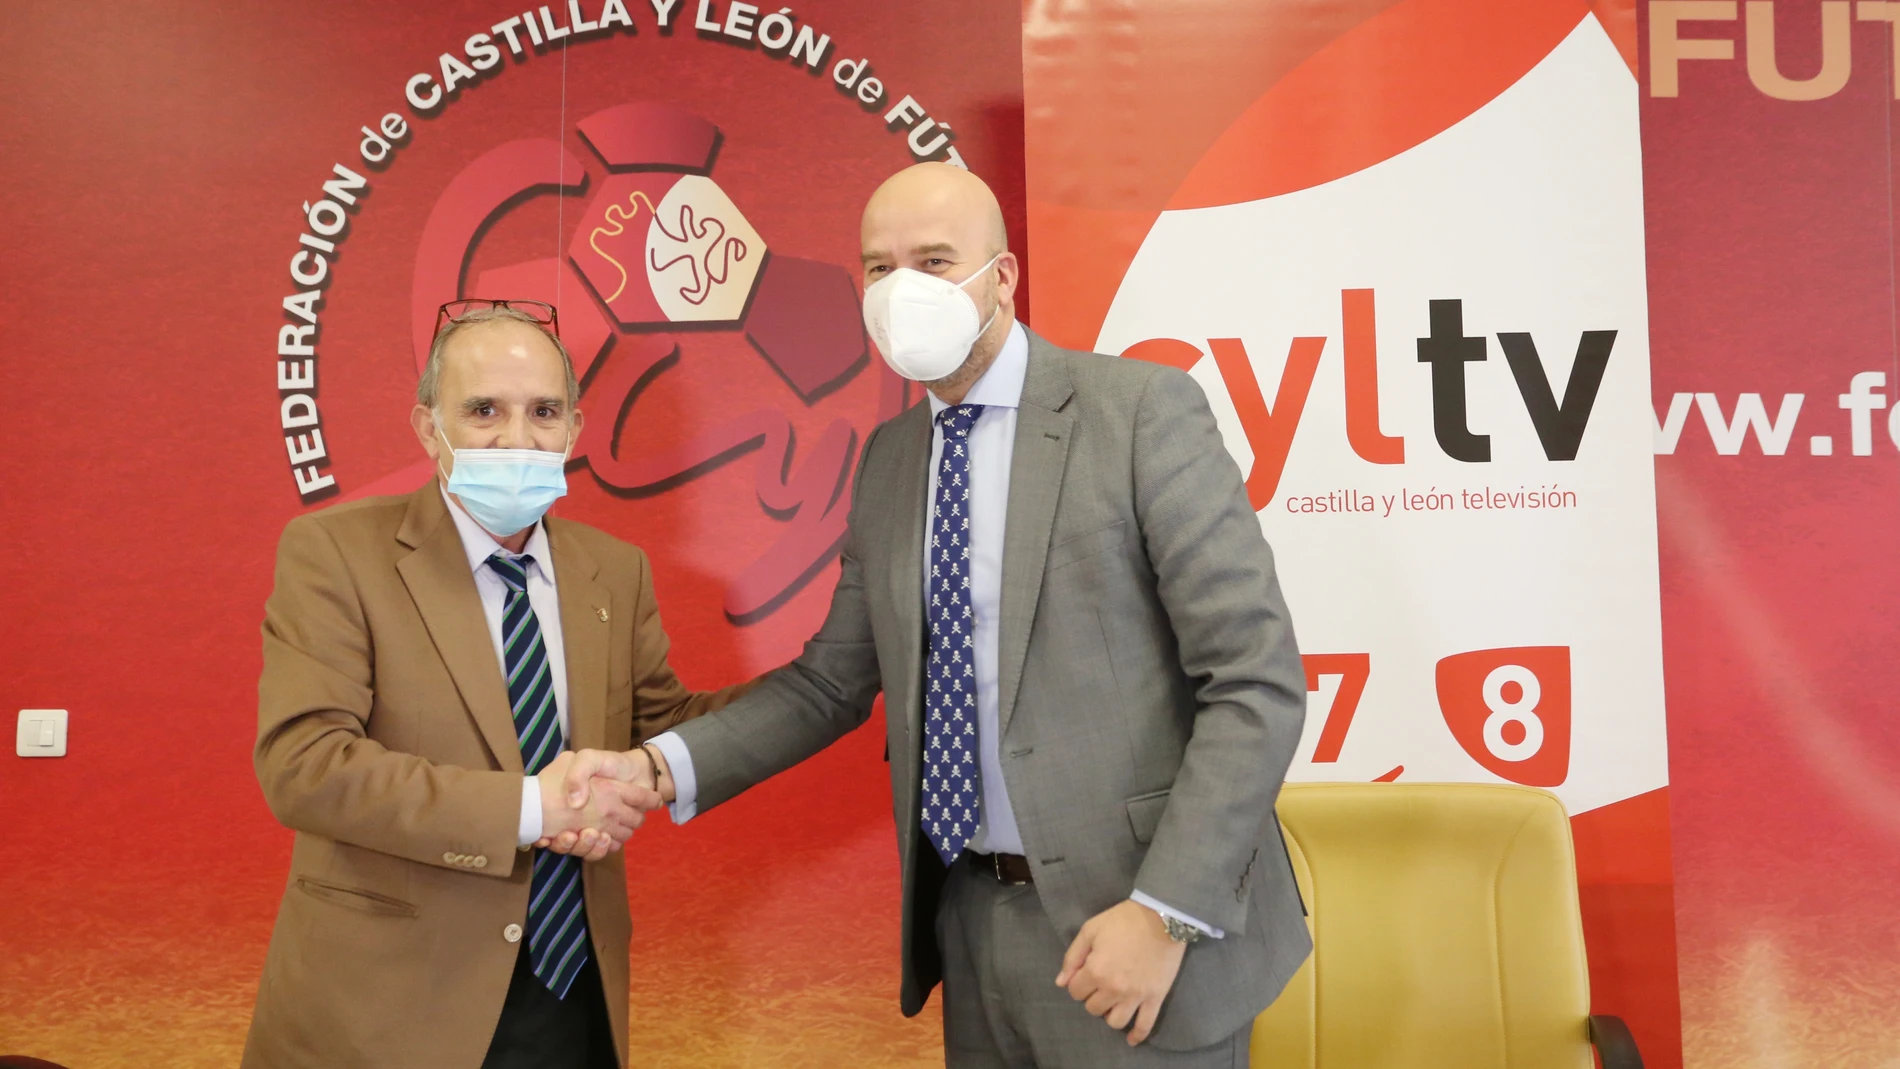 El director general de Radio Televisión de Castilla y León, Jorge Losada, y el presidente de la Federación de Castilla y León de Fútbol, Marcelino S. Maté, suscriben un acuerdo de colaboración